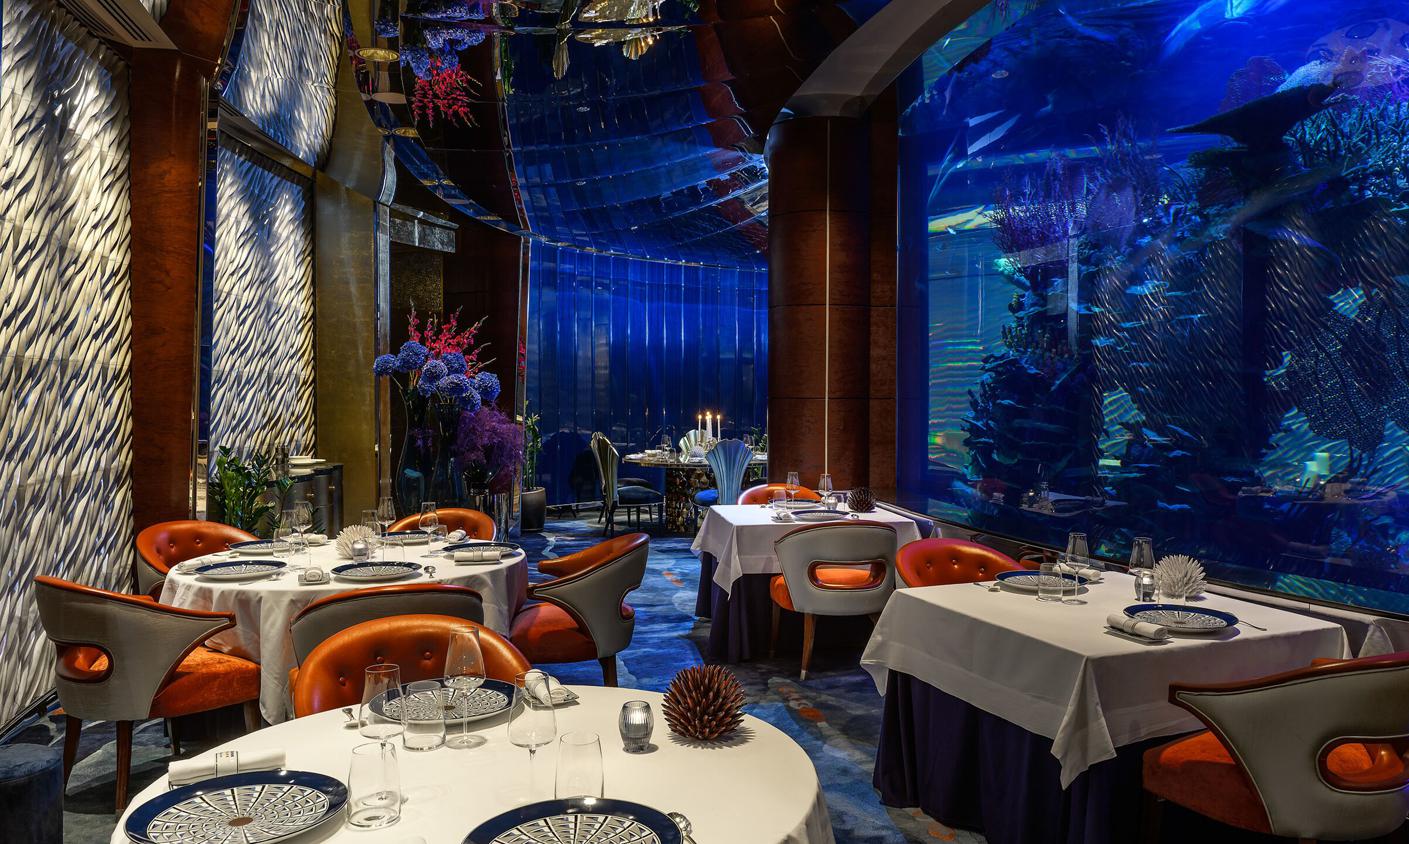 Ресторан-аквариум L’Olivo at Al Mahara